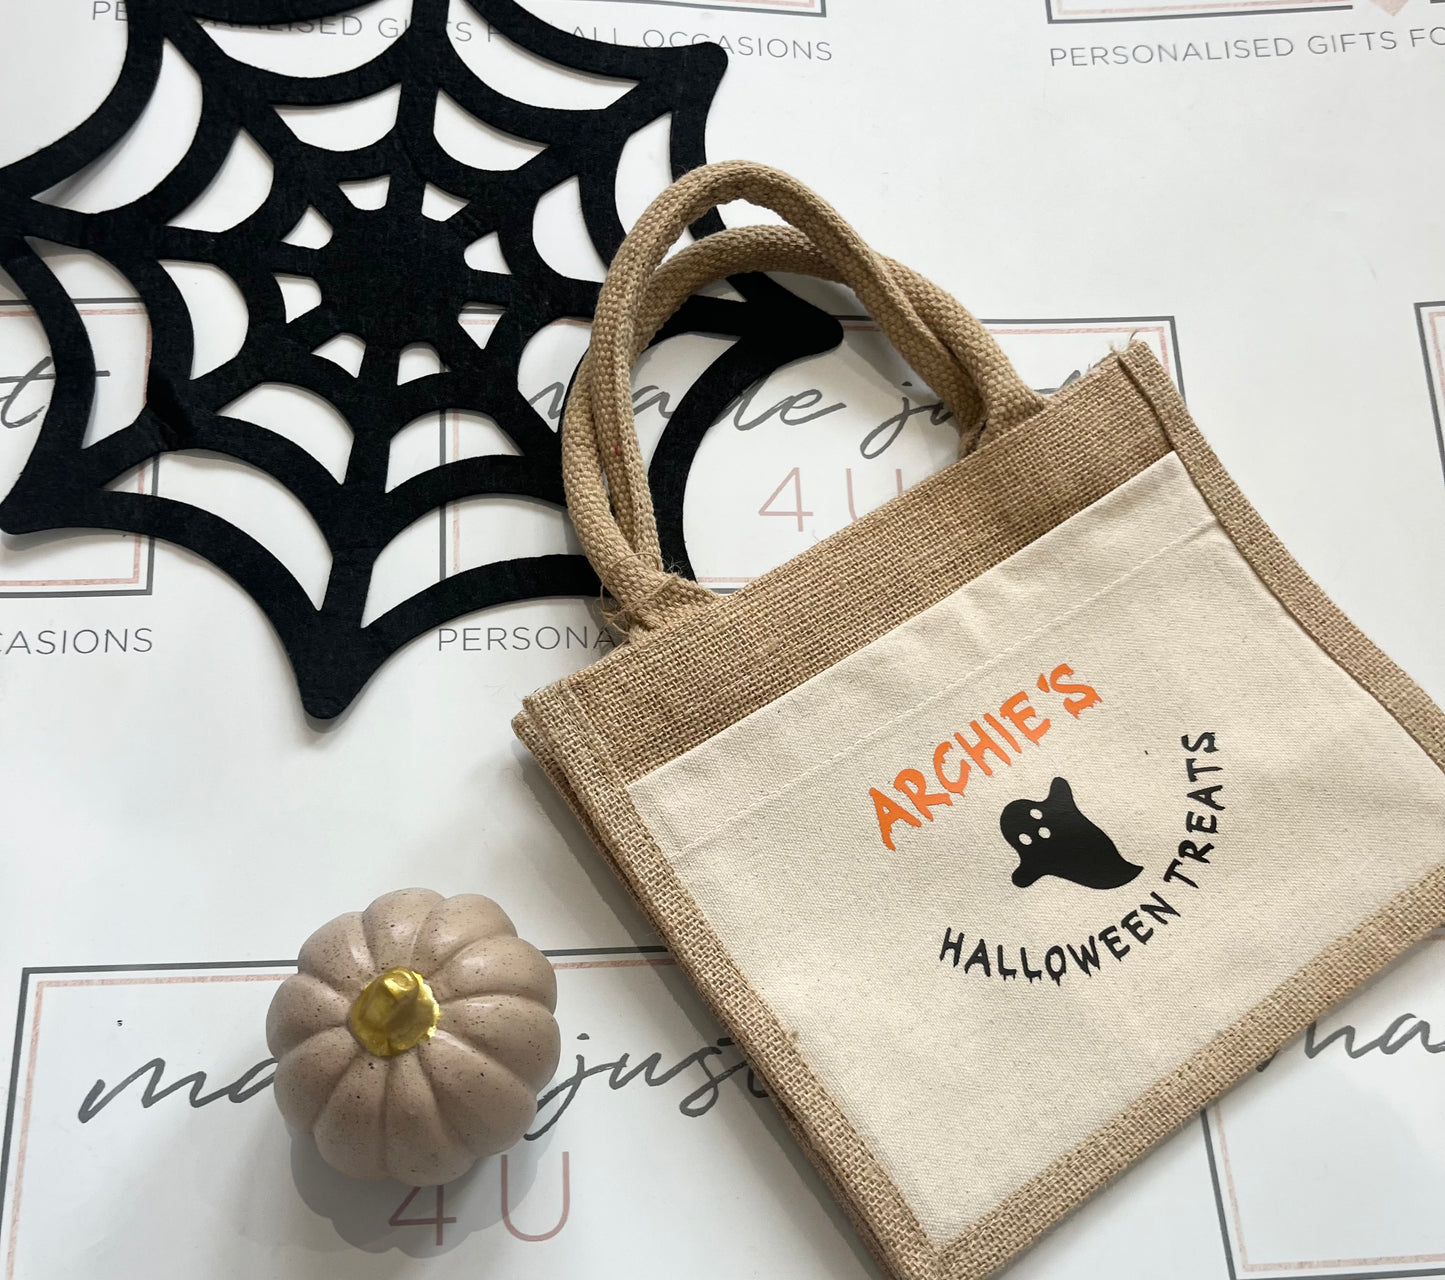 Halloween Gift Bag, Trick or Treat Gift Bag, Tote Bag, Mini Jute Bag